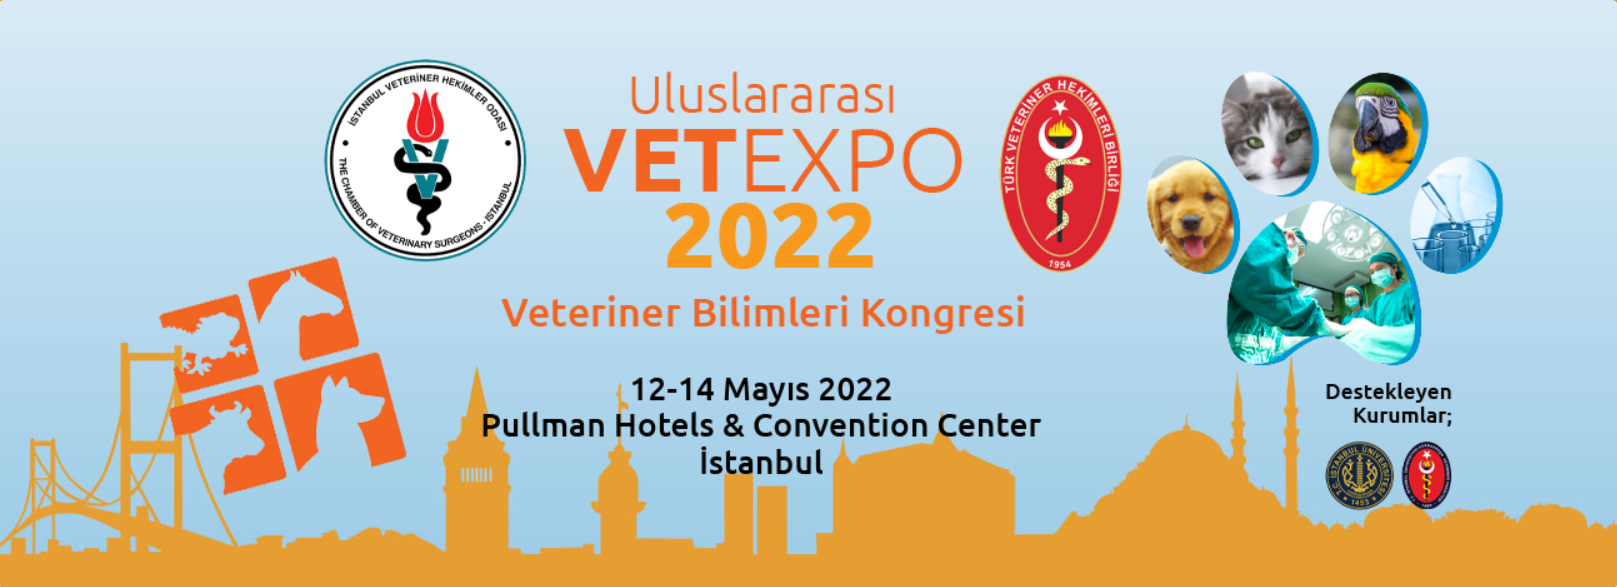 Uluslararası Veteriner Bilimleri Kongresi VETEXPO-2022